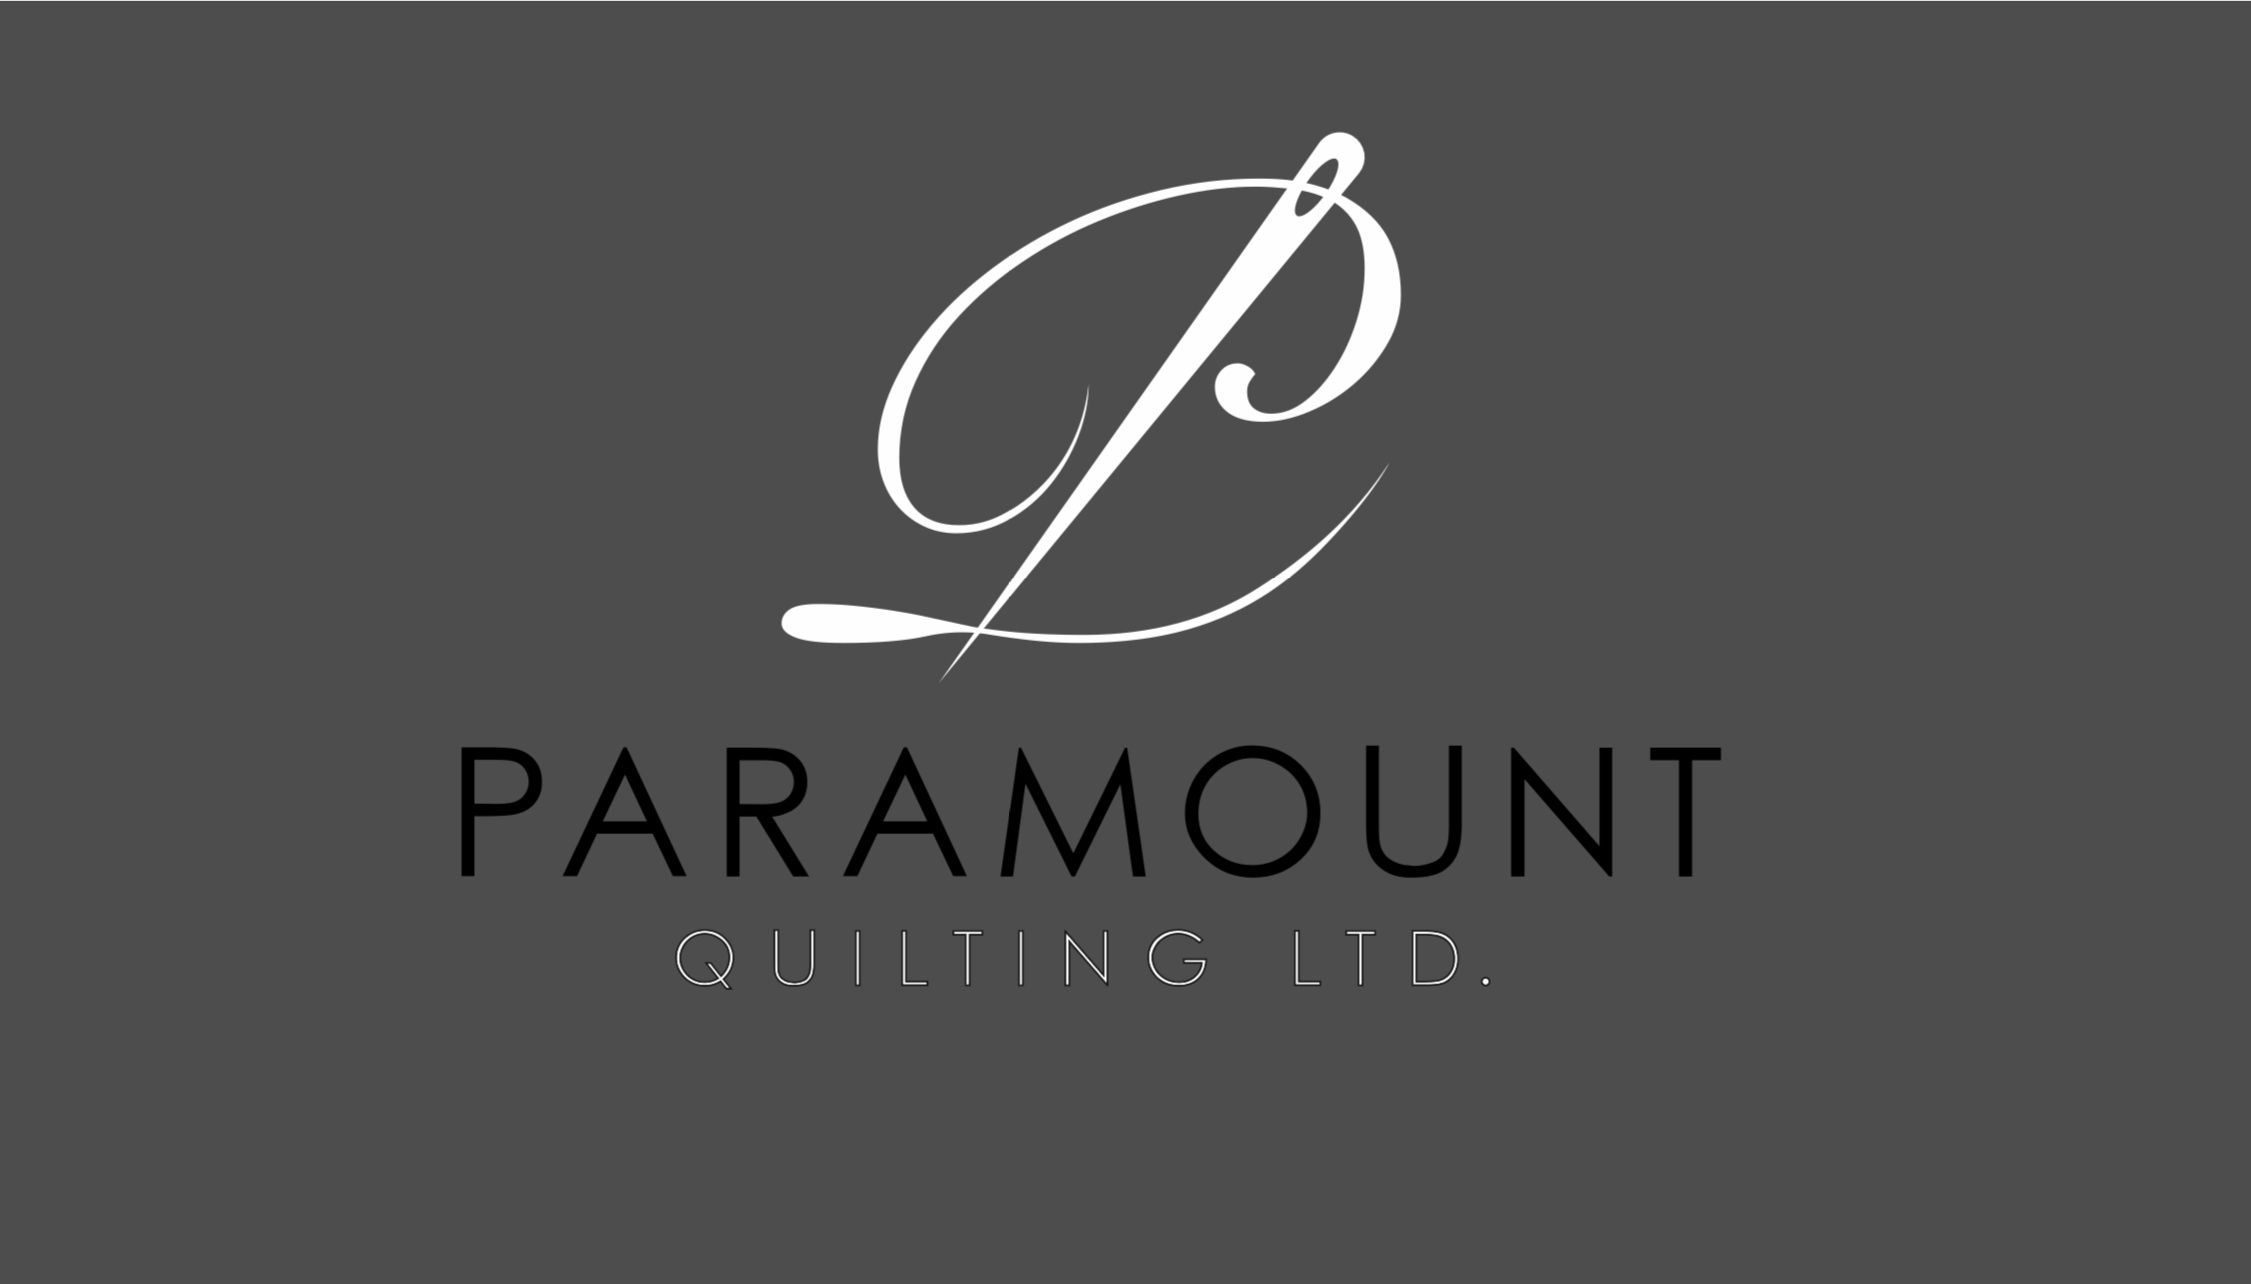 Paramount Quilting Ltd